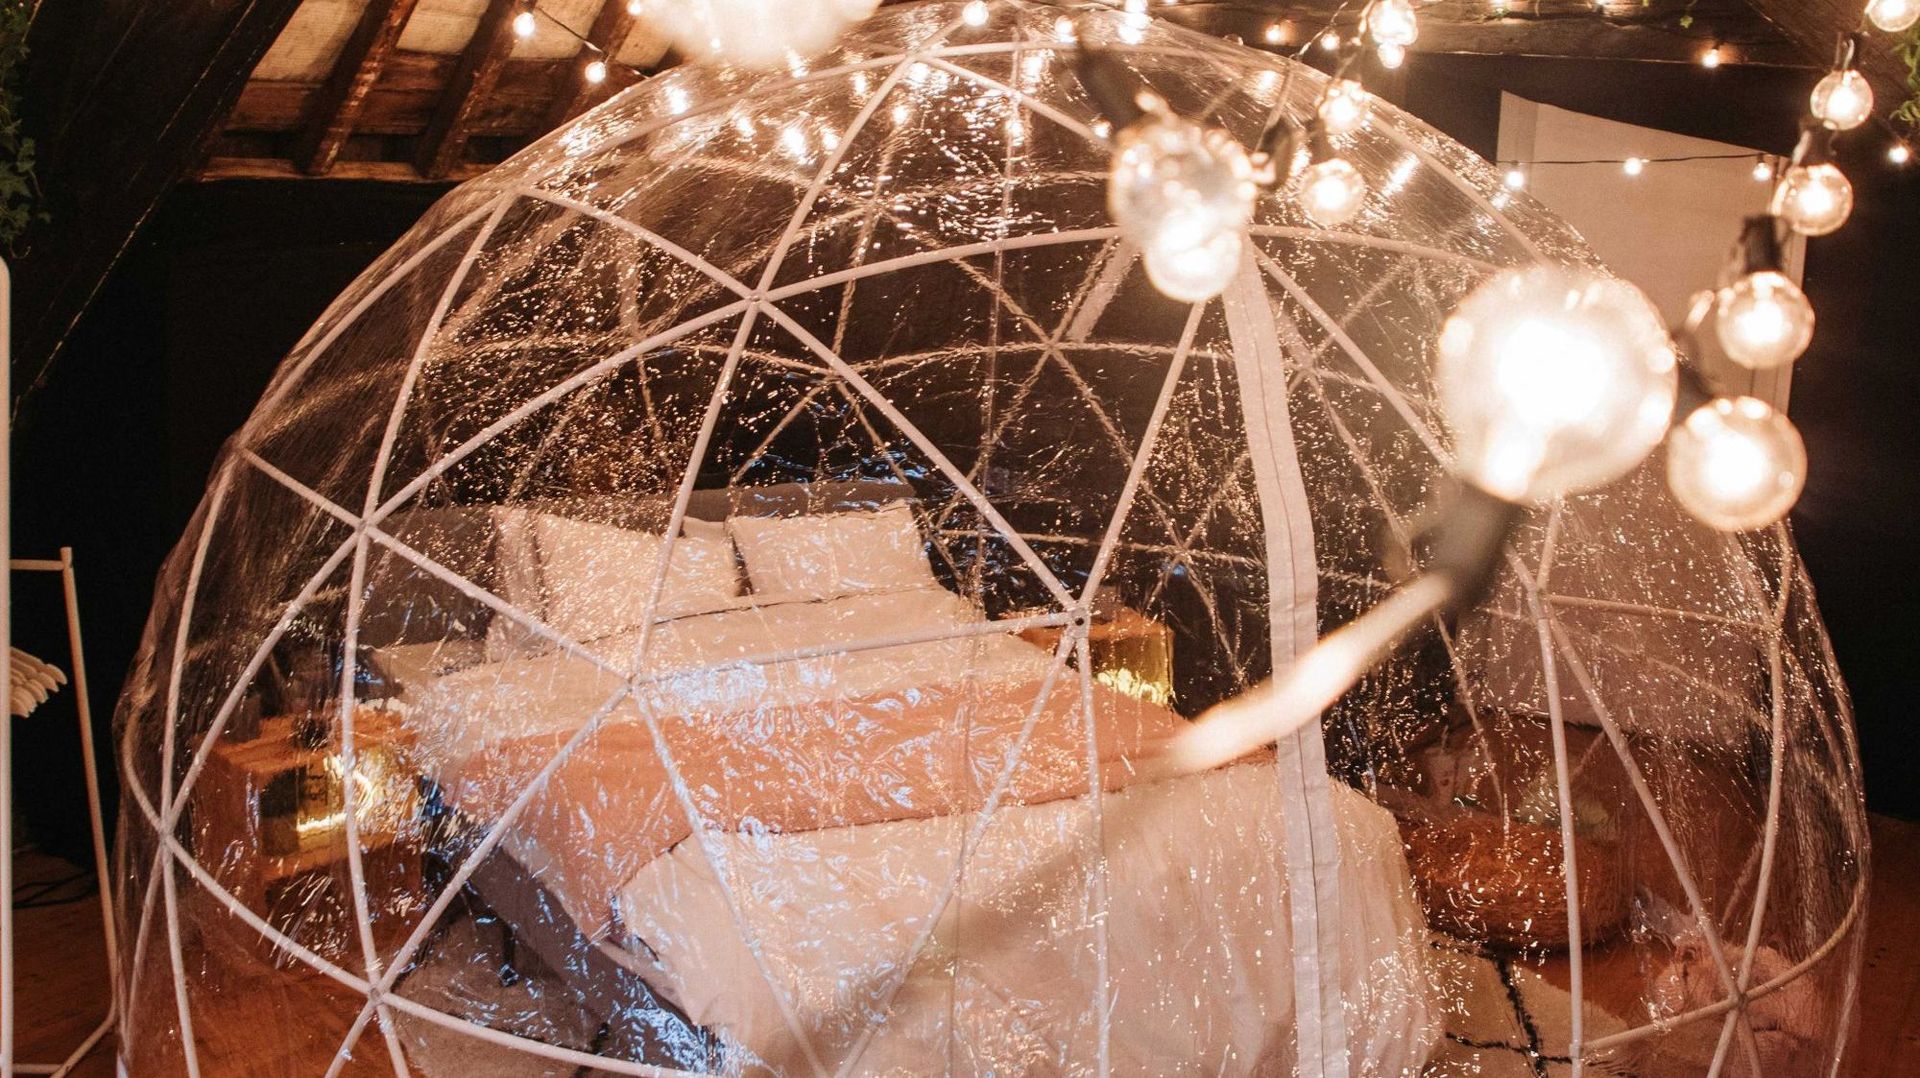 Dormir dans une bulle transparente avec vue sur la Grand Place de Bruxelles